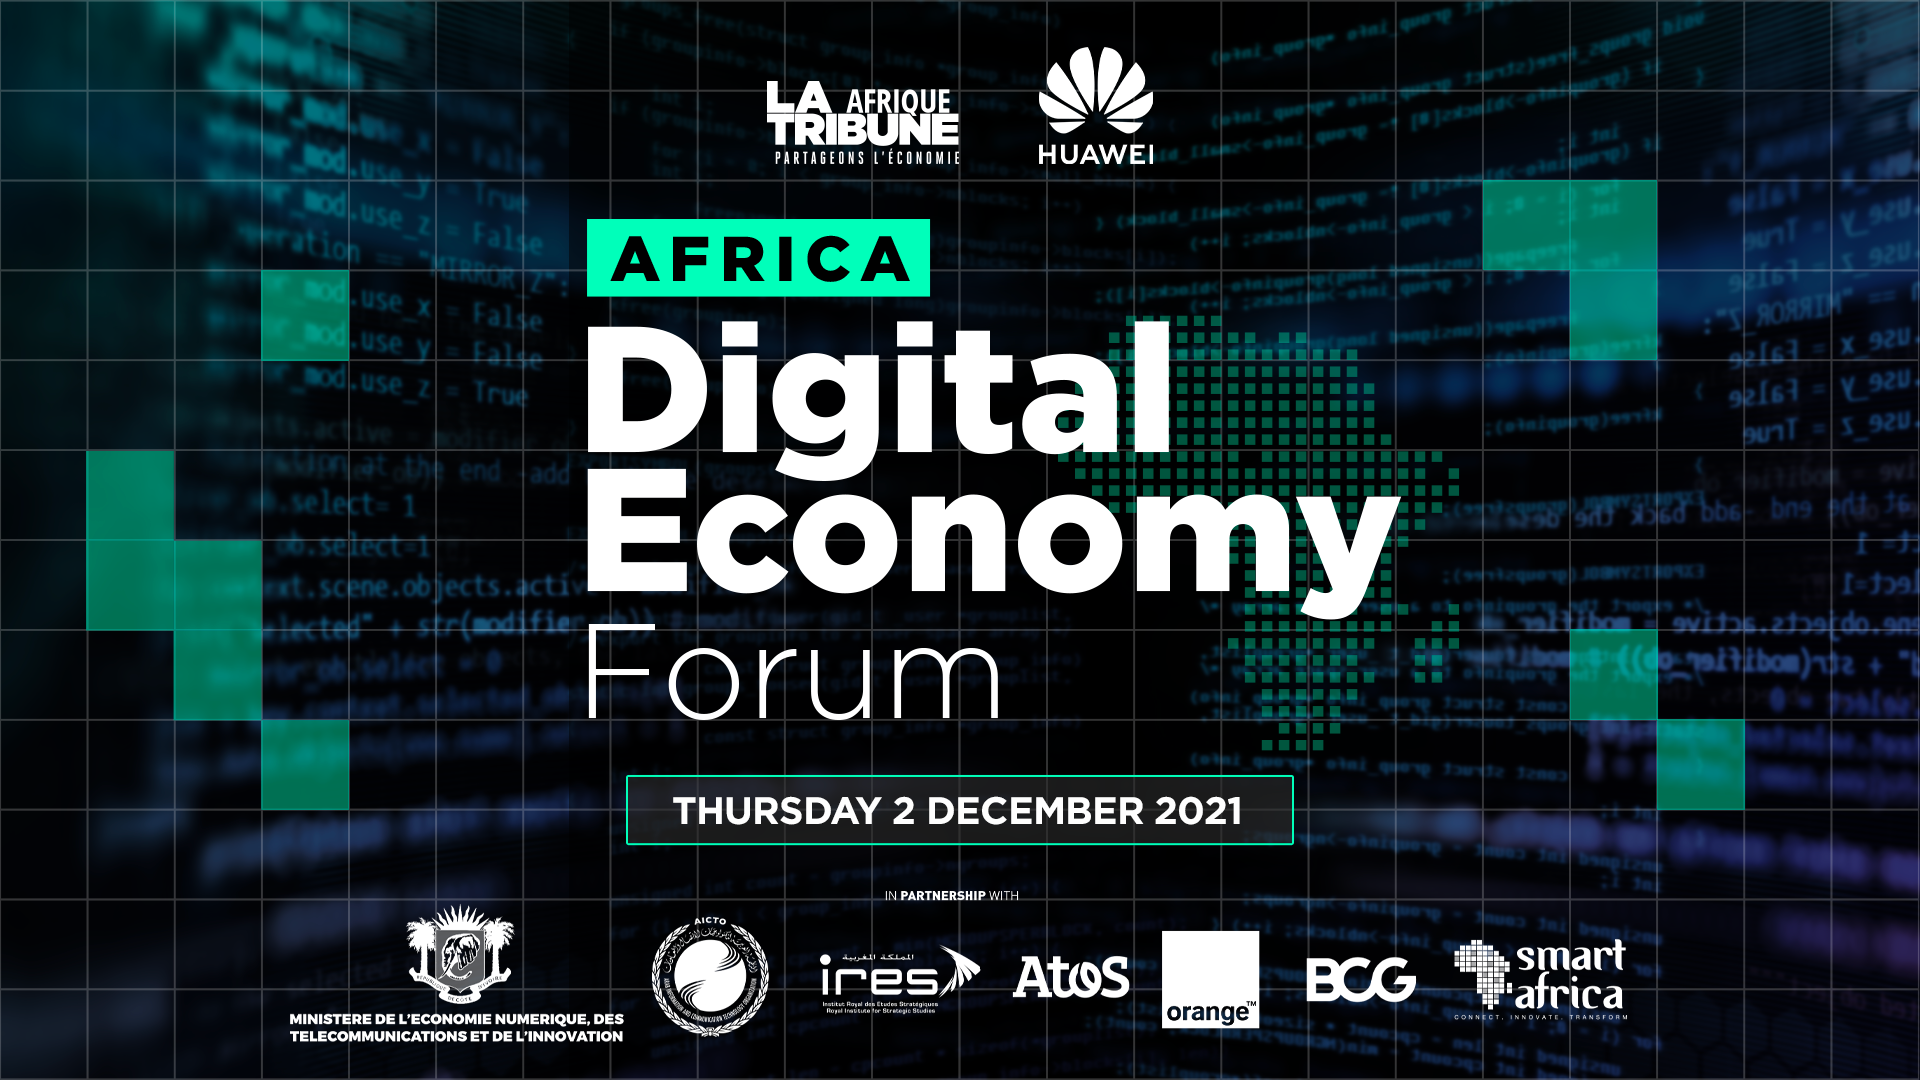 هواوي تكنولوجيز تطلق النسخة الأولى من منتدى الاقتصاد الرقمي لإفريقيا: الاقتصاد الرقمي في ظل التحديات الإفريقية المتسارعة